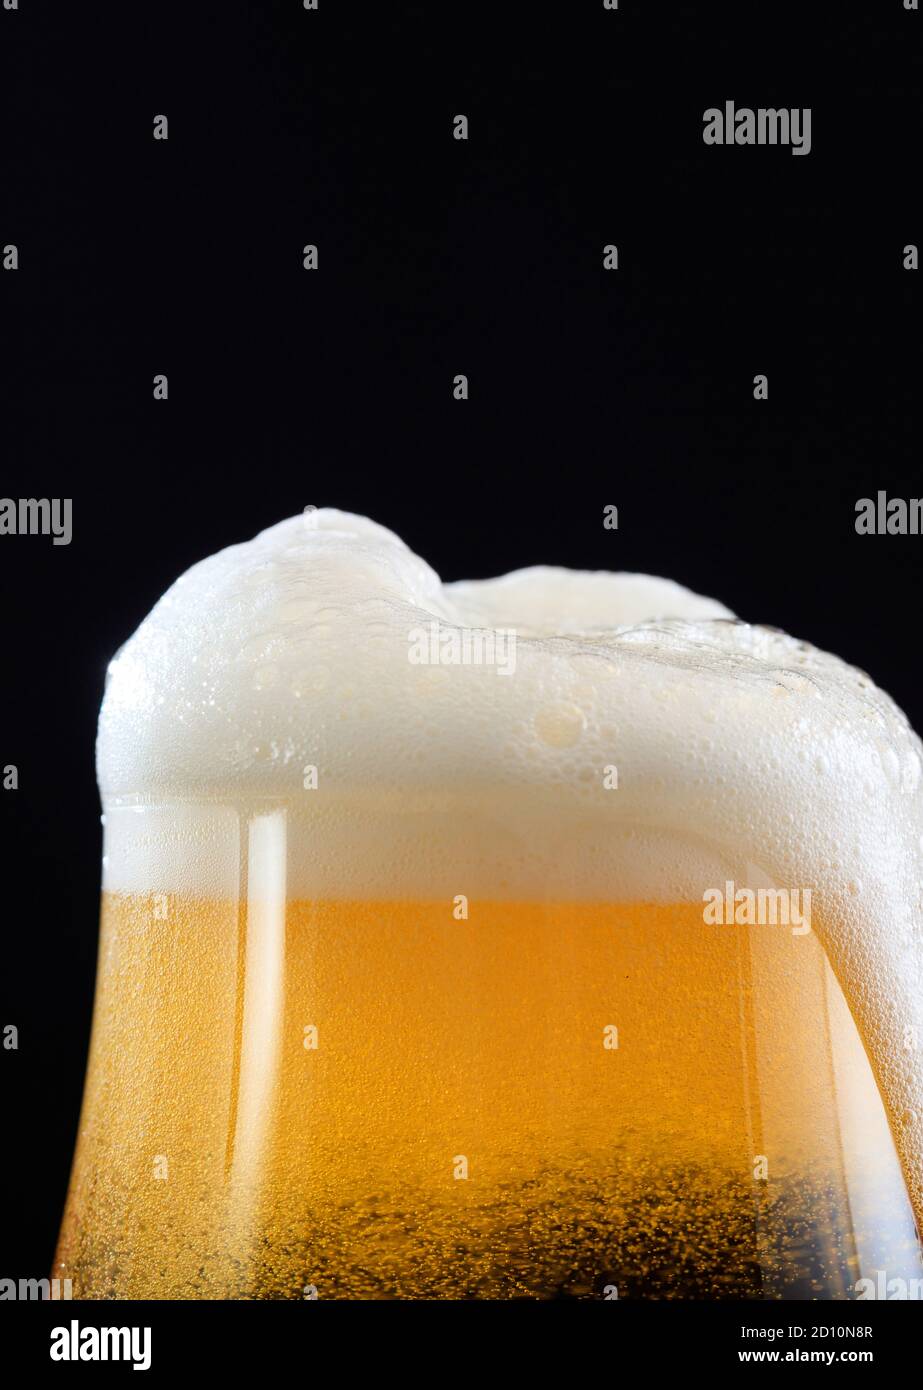 Bierschaum-Detail auf schwarzem Hintergrund, schaumig überlaufendes Glas goldenes Ale Bier, Nahaufnahme beschnittene Porträt-Ansicht, Kopierraum Stockfoto